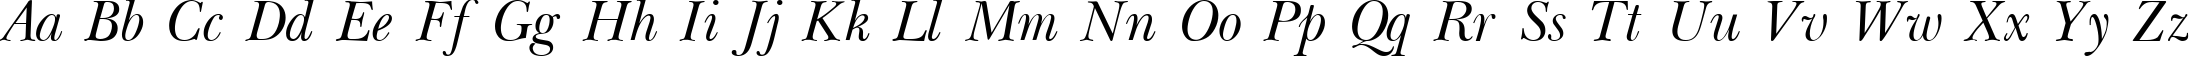 Пример написания английского алфавита шрифтом Baskerville Light Italic